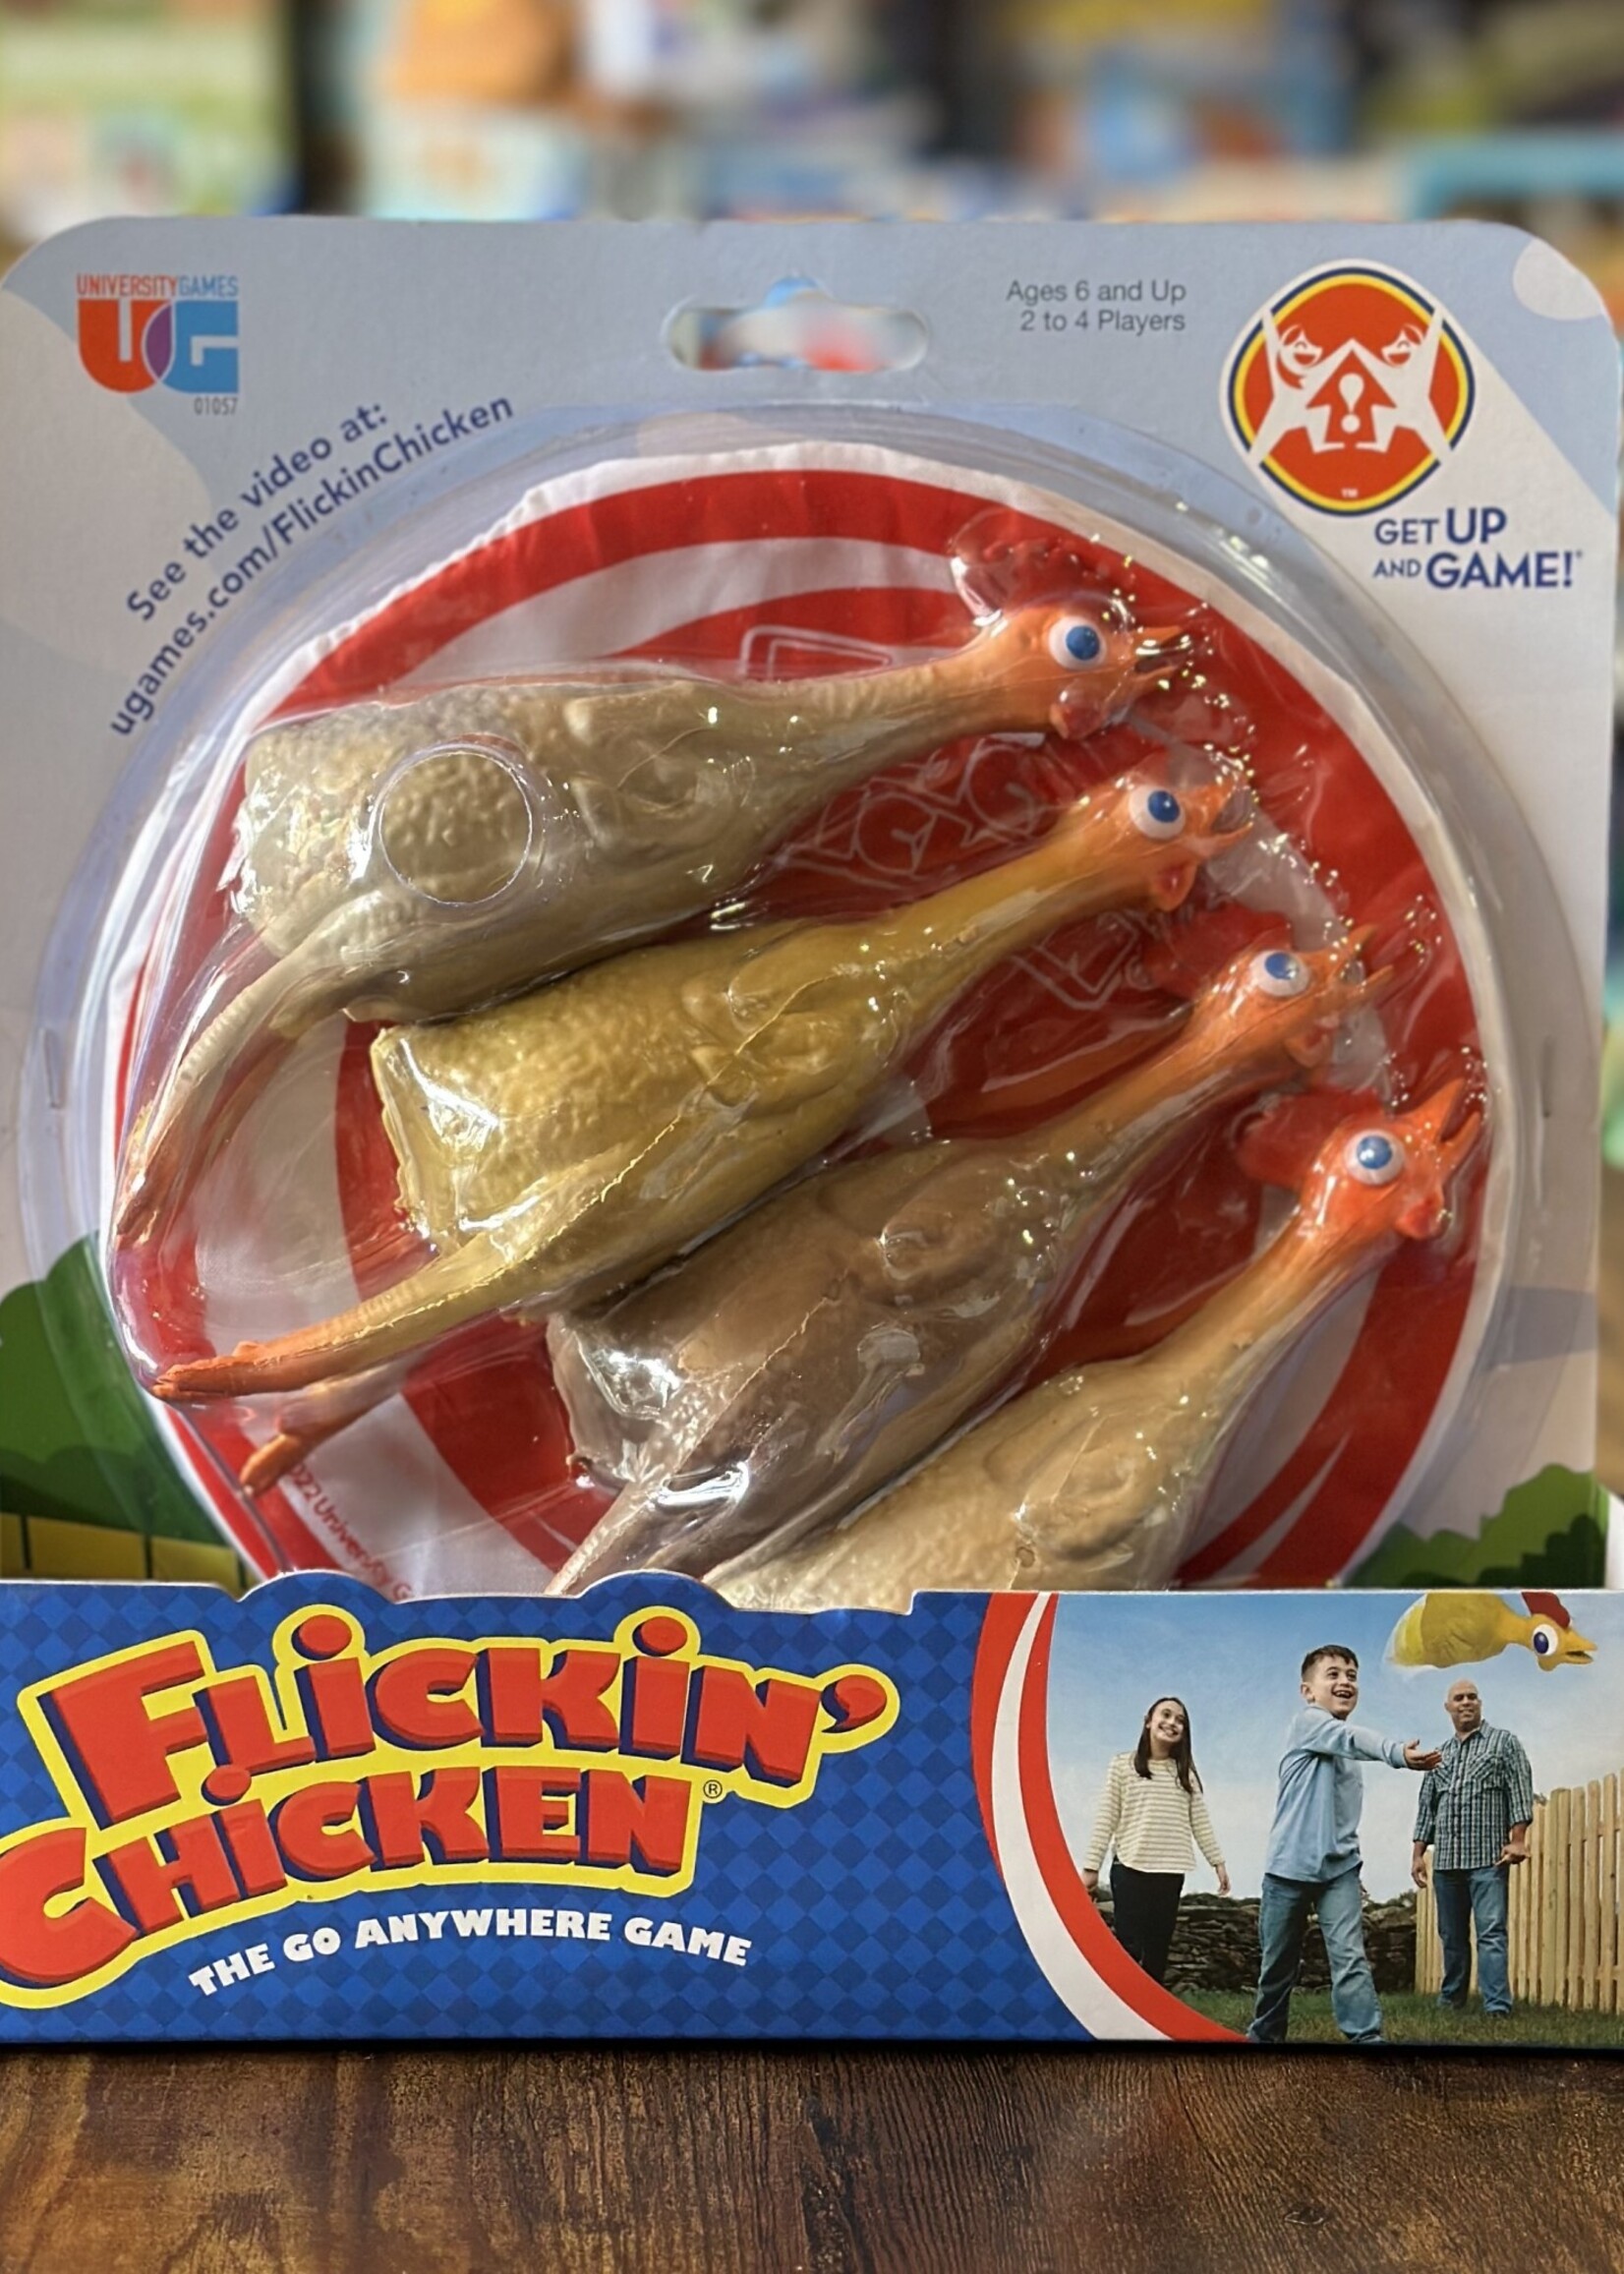 University Games Game - Flickin' Chicken